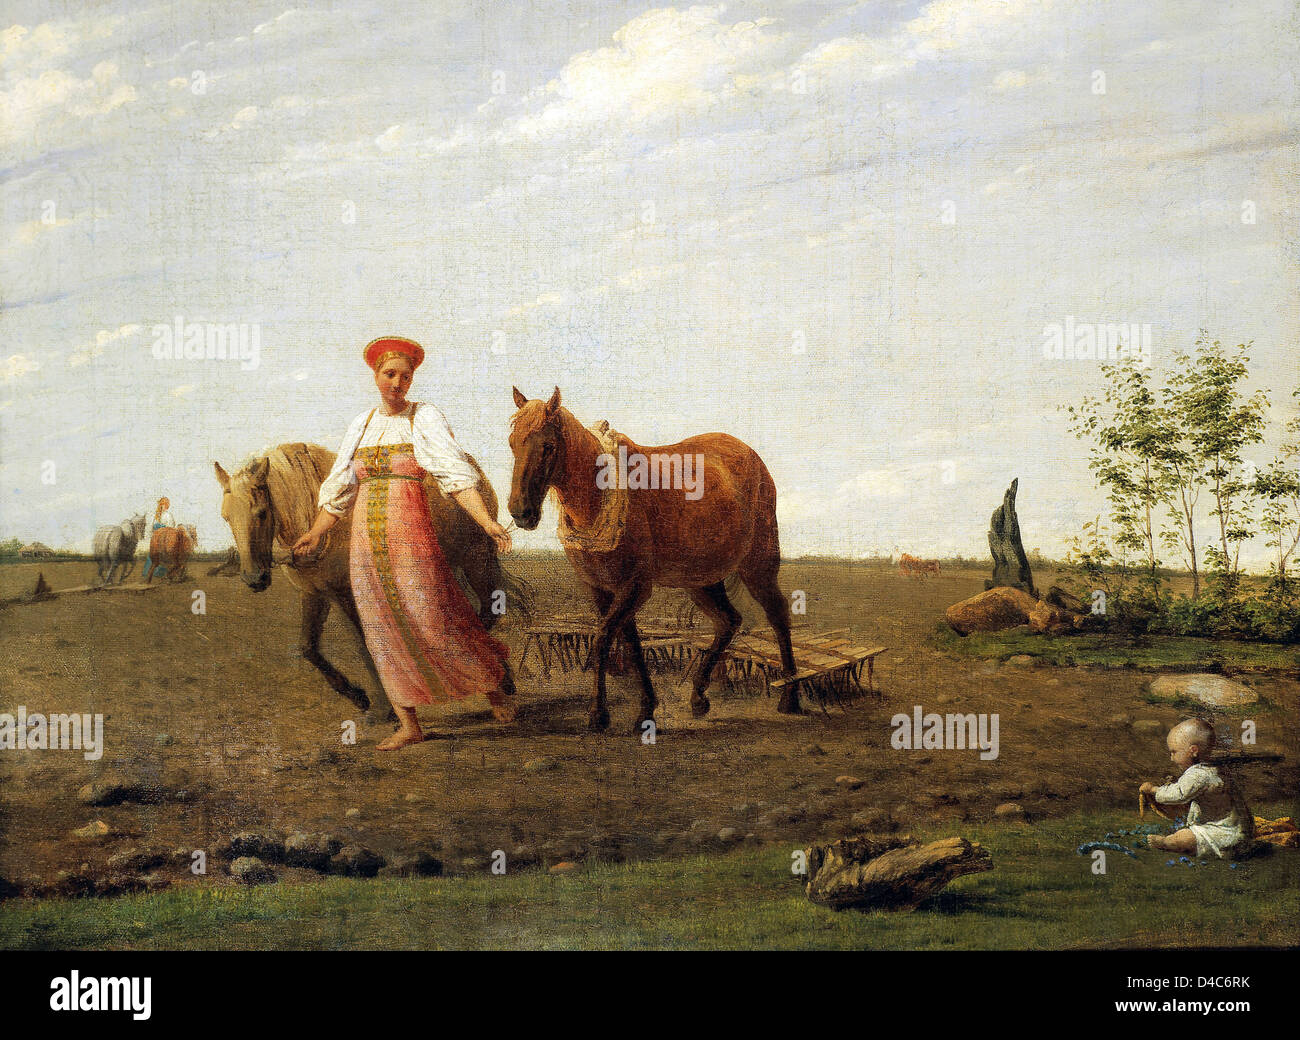 Alexey Venetsianov, In den Acker. Frühling der 1820er Jahre Öl auf Leinwand. Tretjakow-Galerie, Moskau, Russland Stockfoto